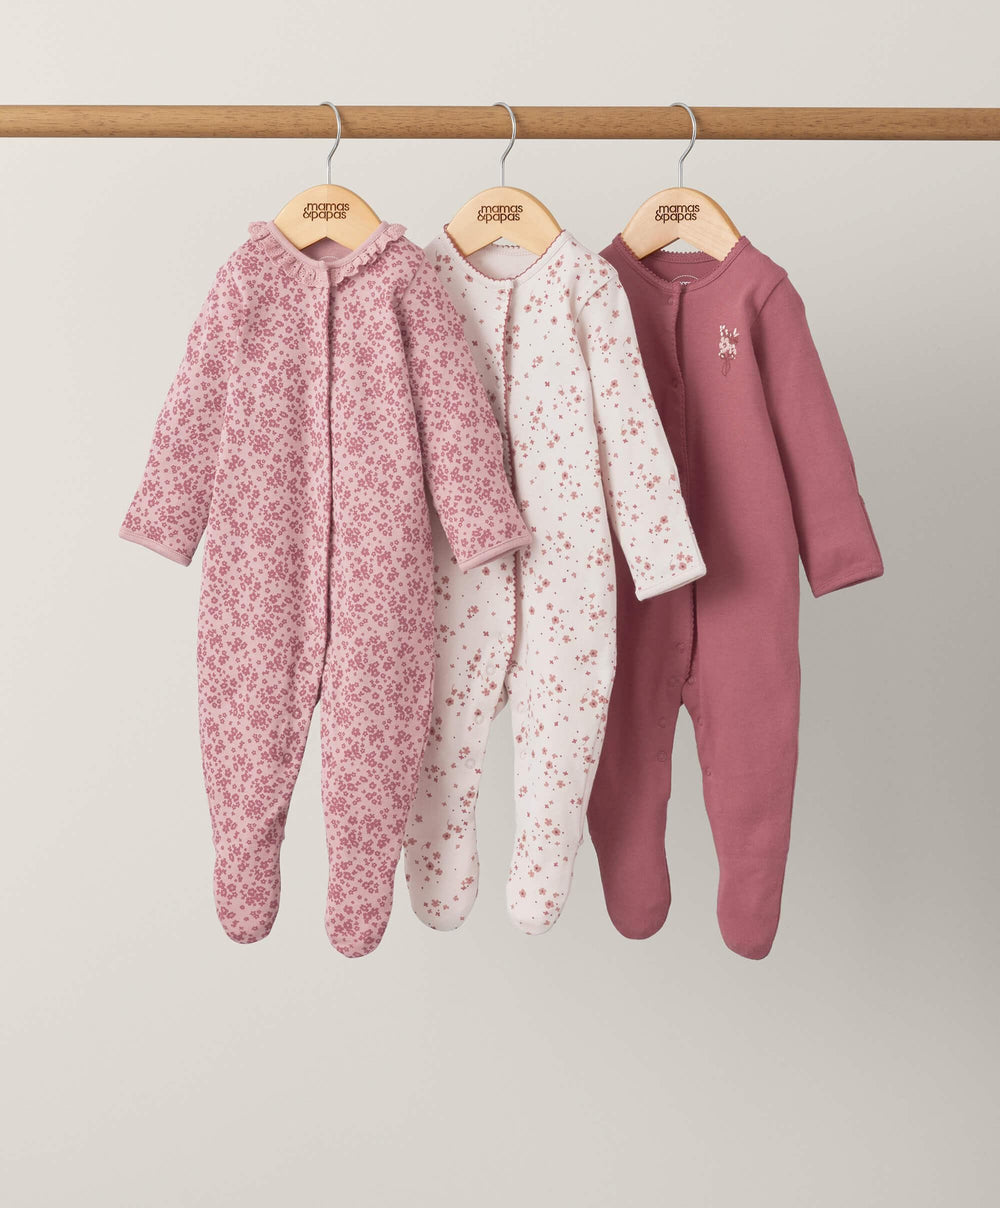 Mamas & Papas Scarlet Blooms Sleepsuits (3 Pack)